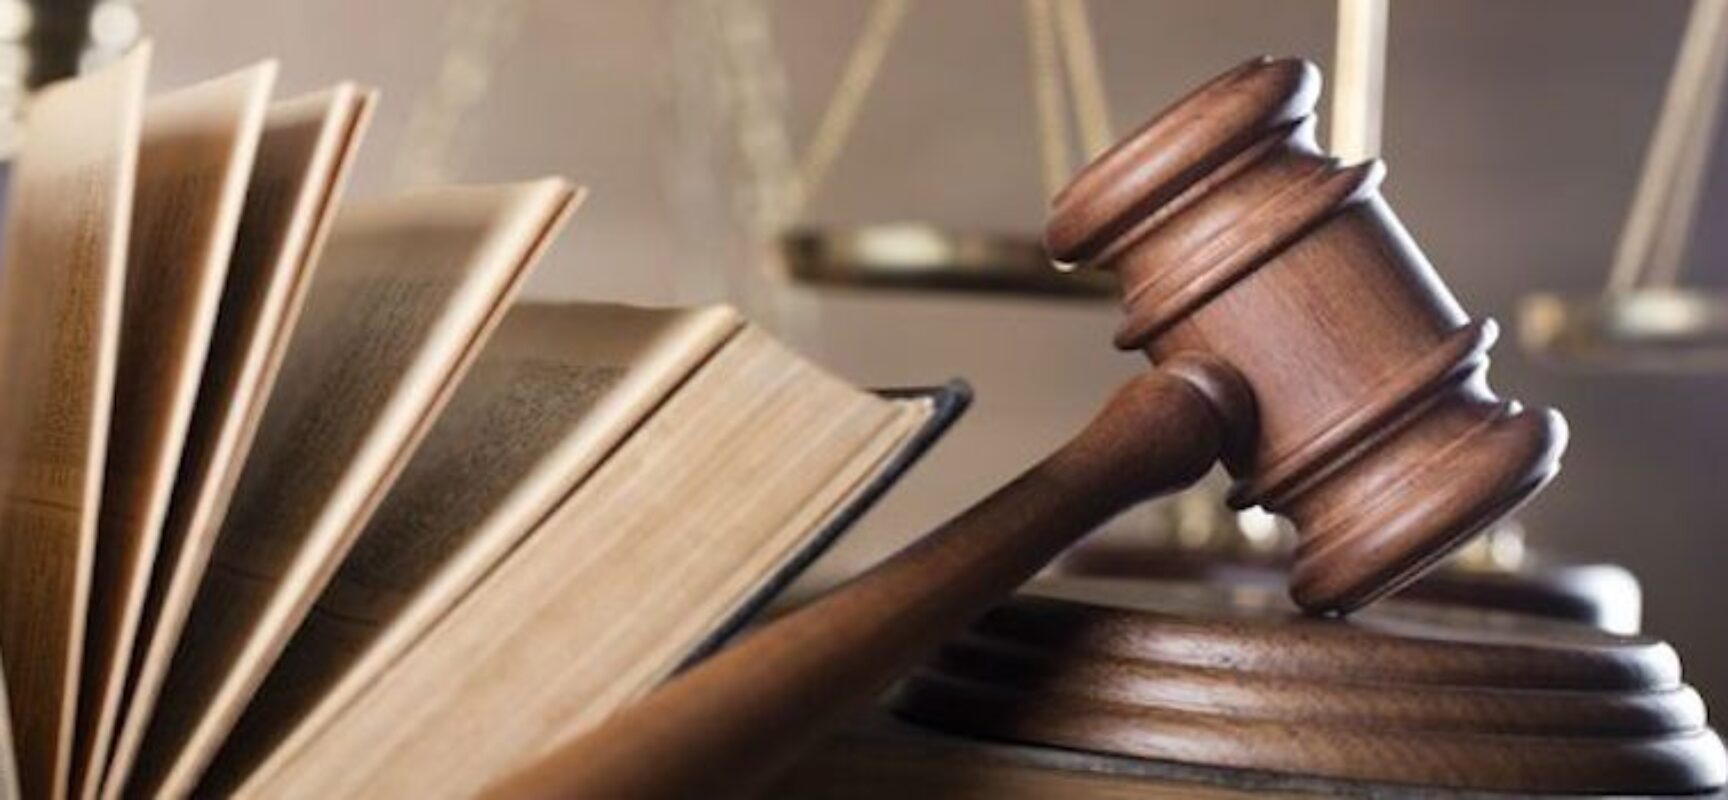 Associazione Avvocati Bisceglie organizza seminario giuridico su riforma Cartabia